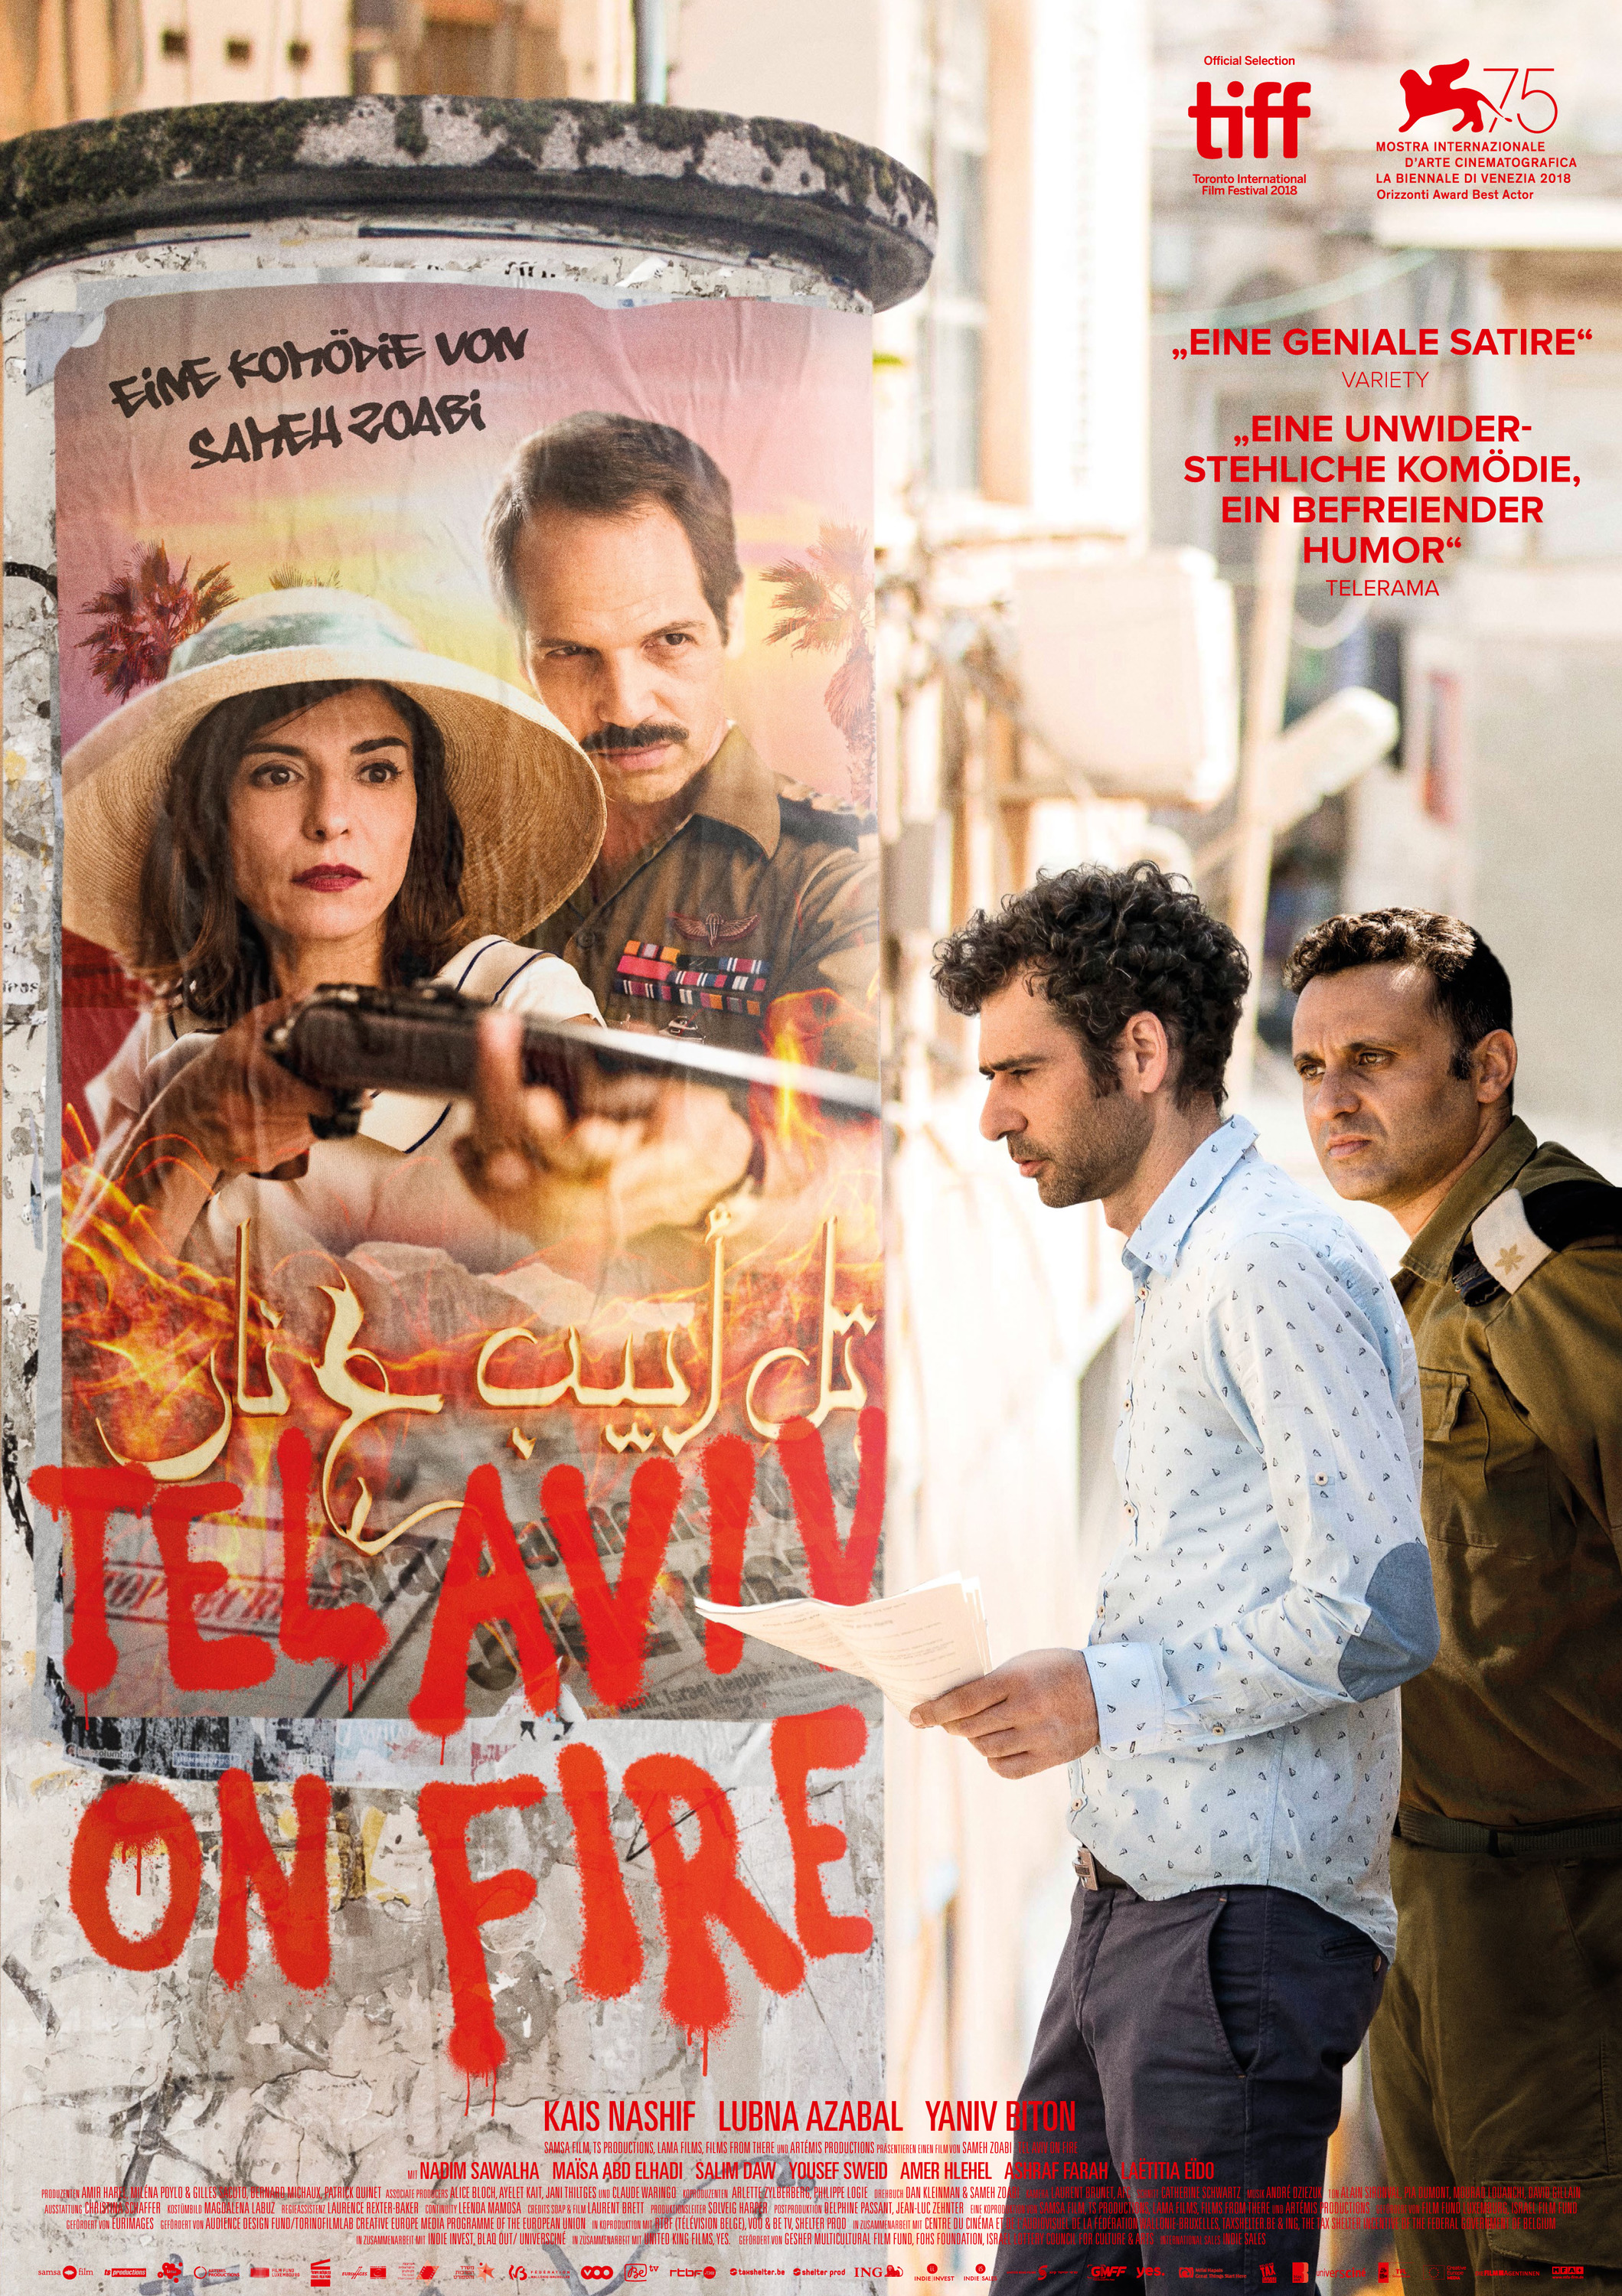 Mega Sized Movie Poster Image for Tel Aviv on Fire (#4 of 5)